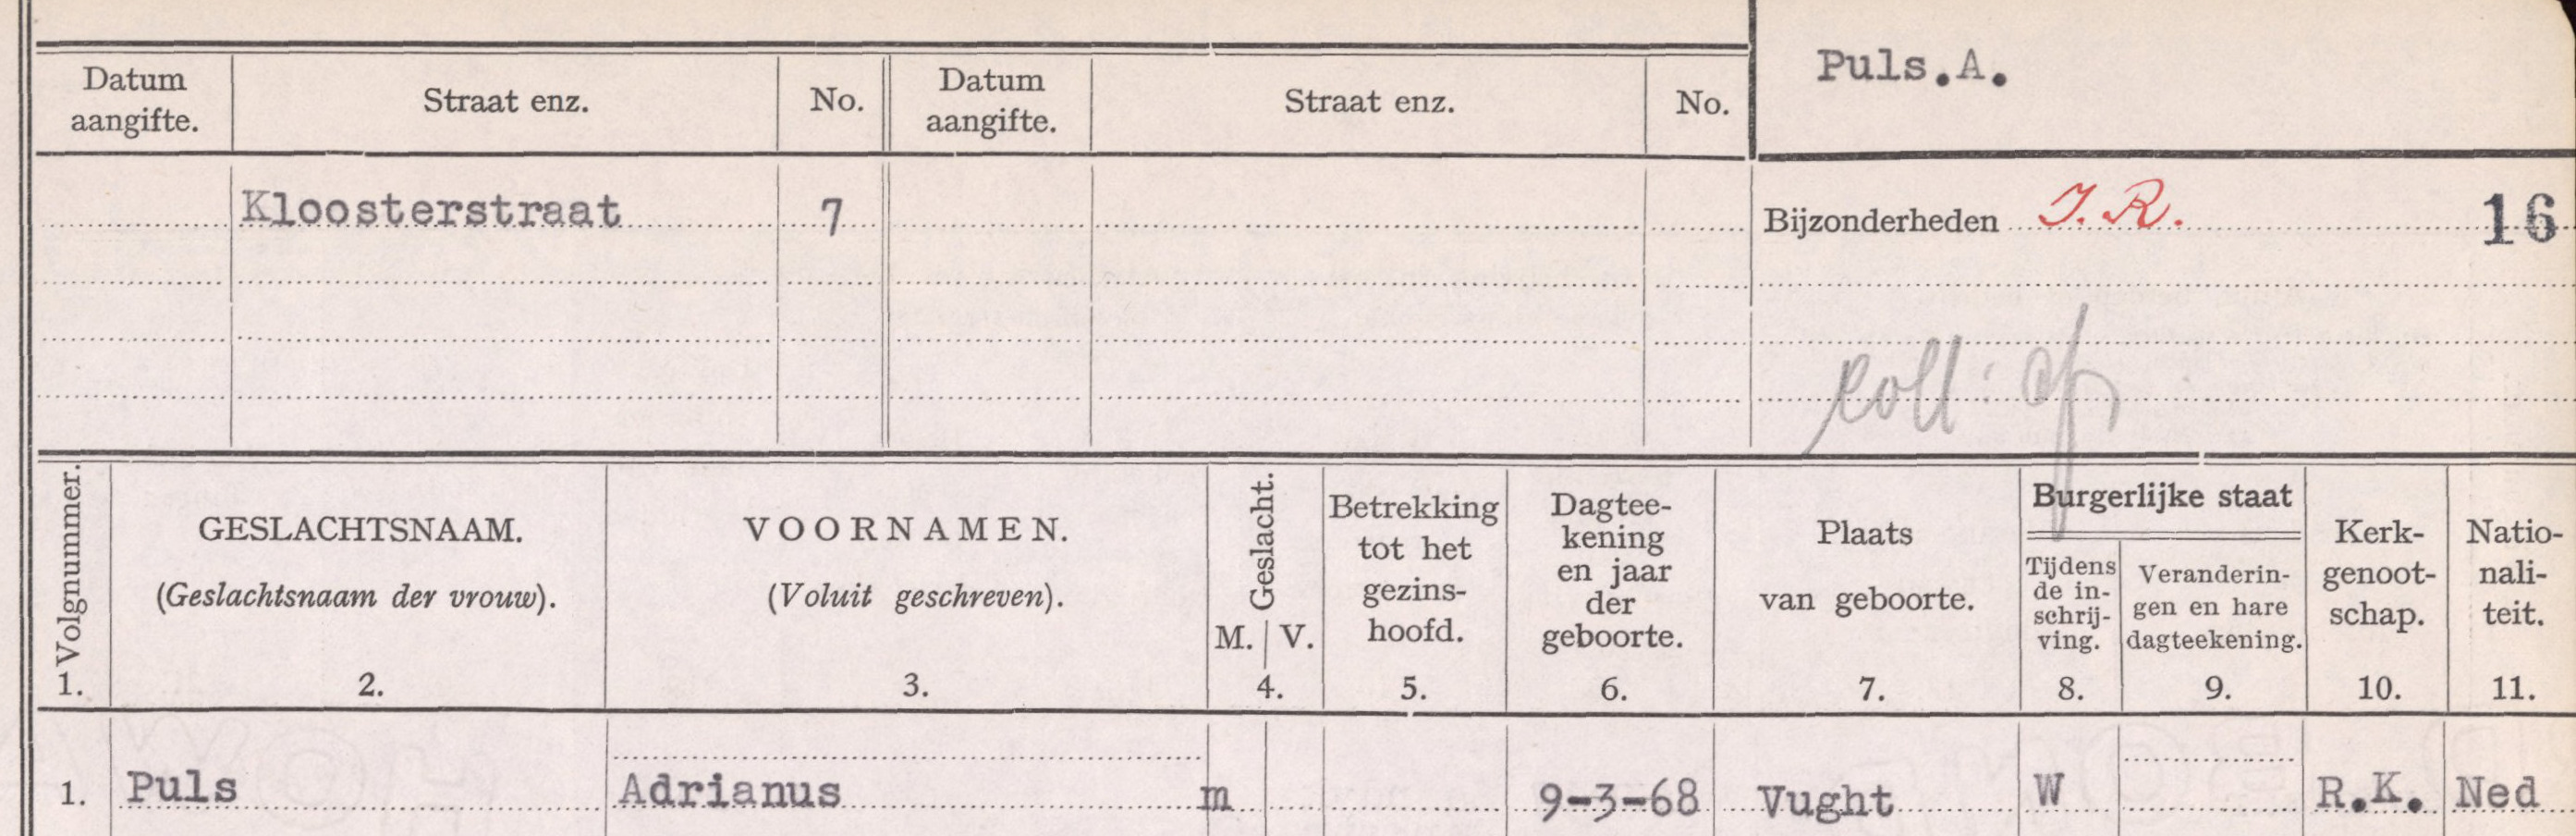 puls_adrianus__woont_als_weduwnaar_in_de_kloosterstraat_7_in_vught_-_gezinskaart_1920-1940.jpg